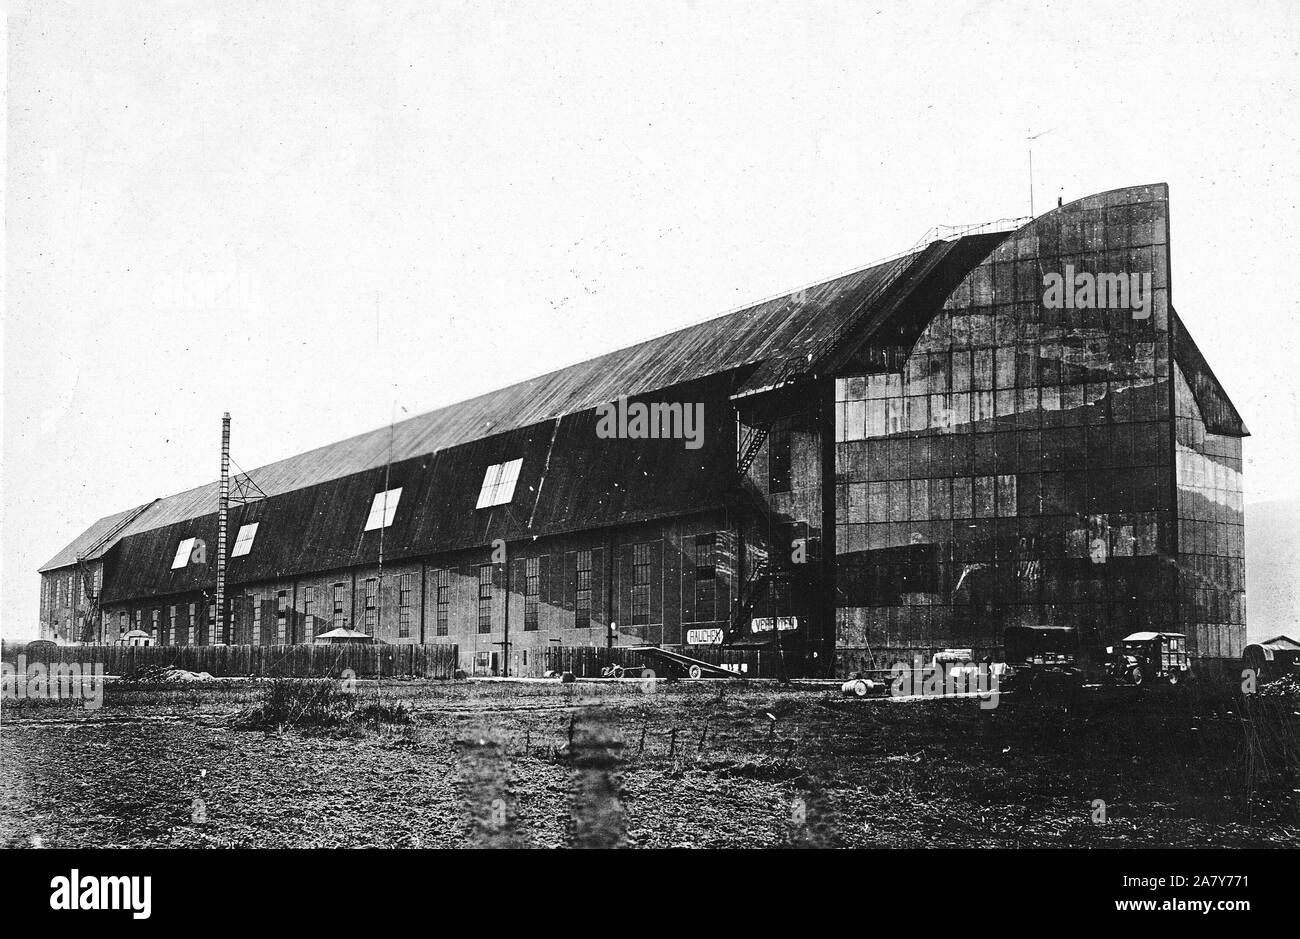 1919 - der Besatzungsarmee - Trier, Deutschland, dem Sitz der amerikanischen Besatzungstruppen. Zeppelin Hangar drehte sich zu den Amerikanern. Drei Viertel der Seitenansicht Stockfoto